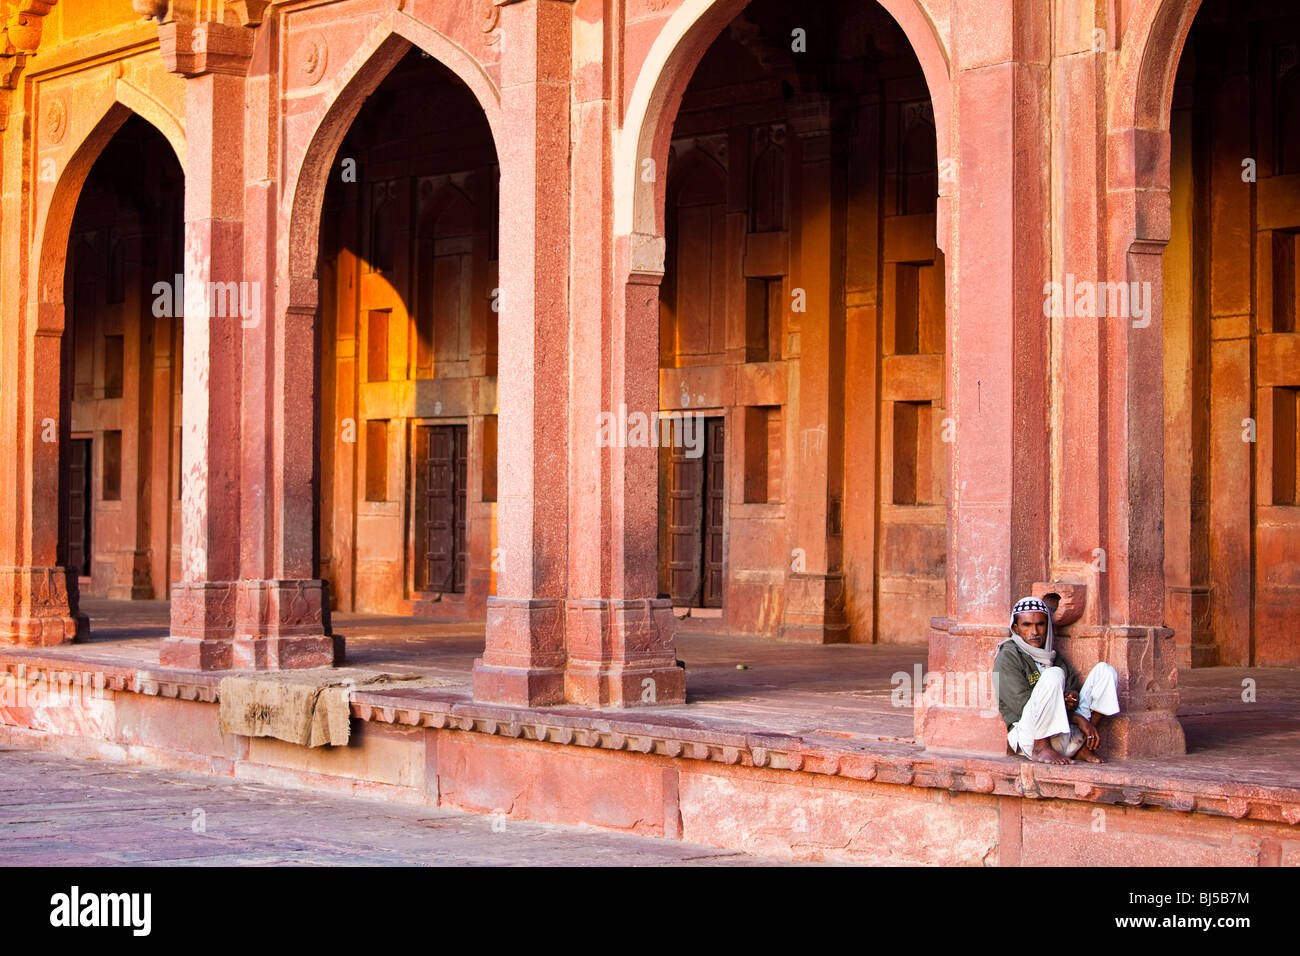 Im Inneren der Freitagsmoschee in Fatehpur Sikri Indien Stockfoto